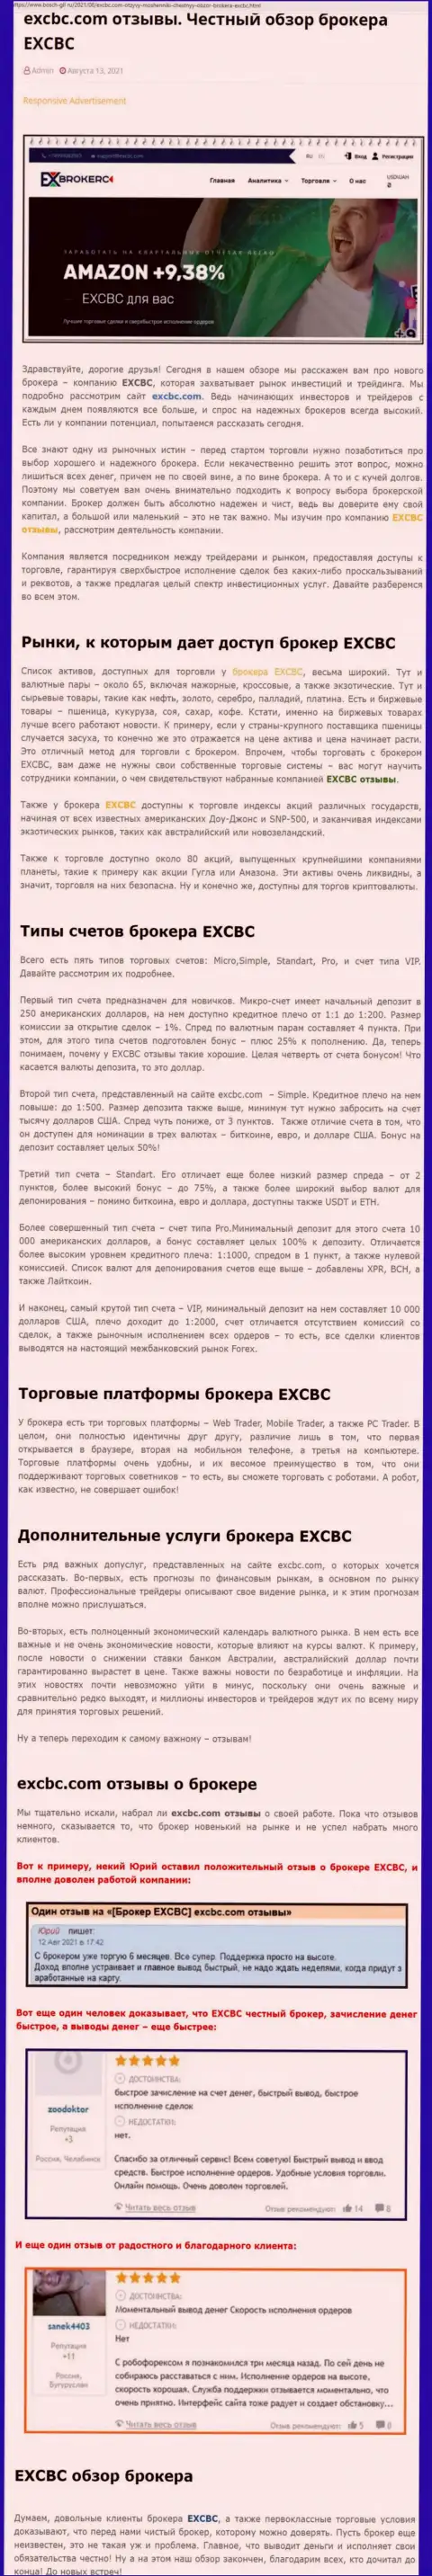 Честный обзор forex дилингового центра EX Brokerc на информационном сервисе bosch-gll ru